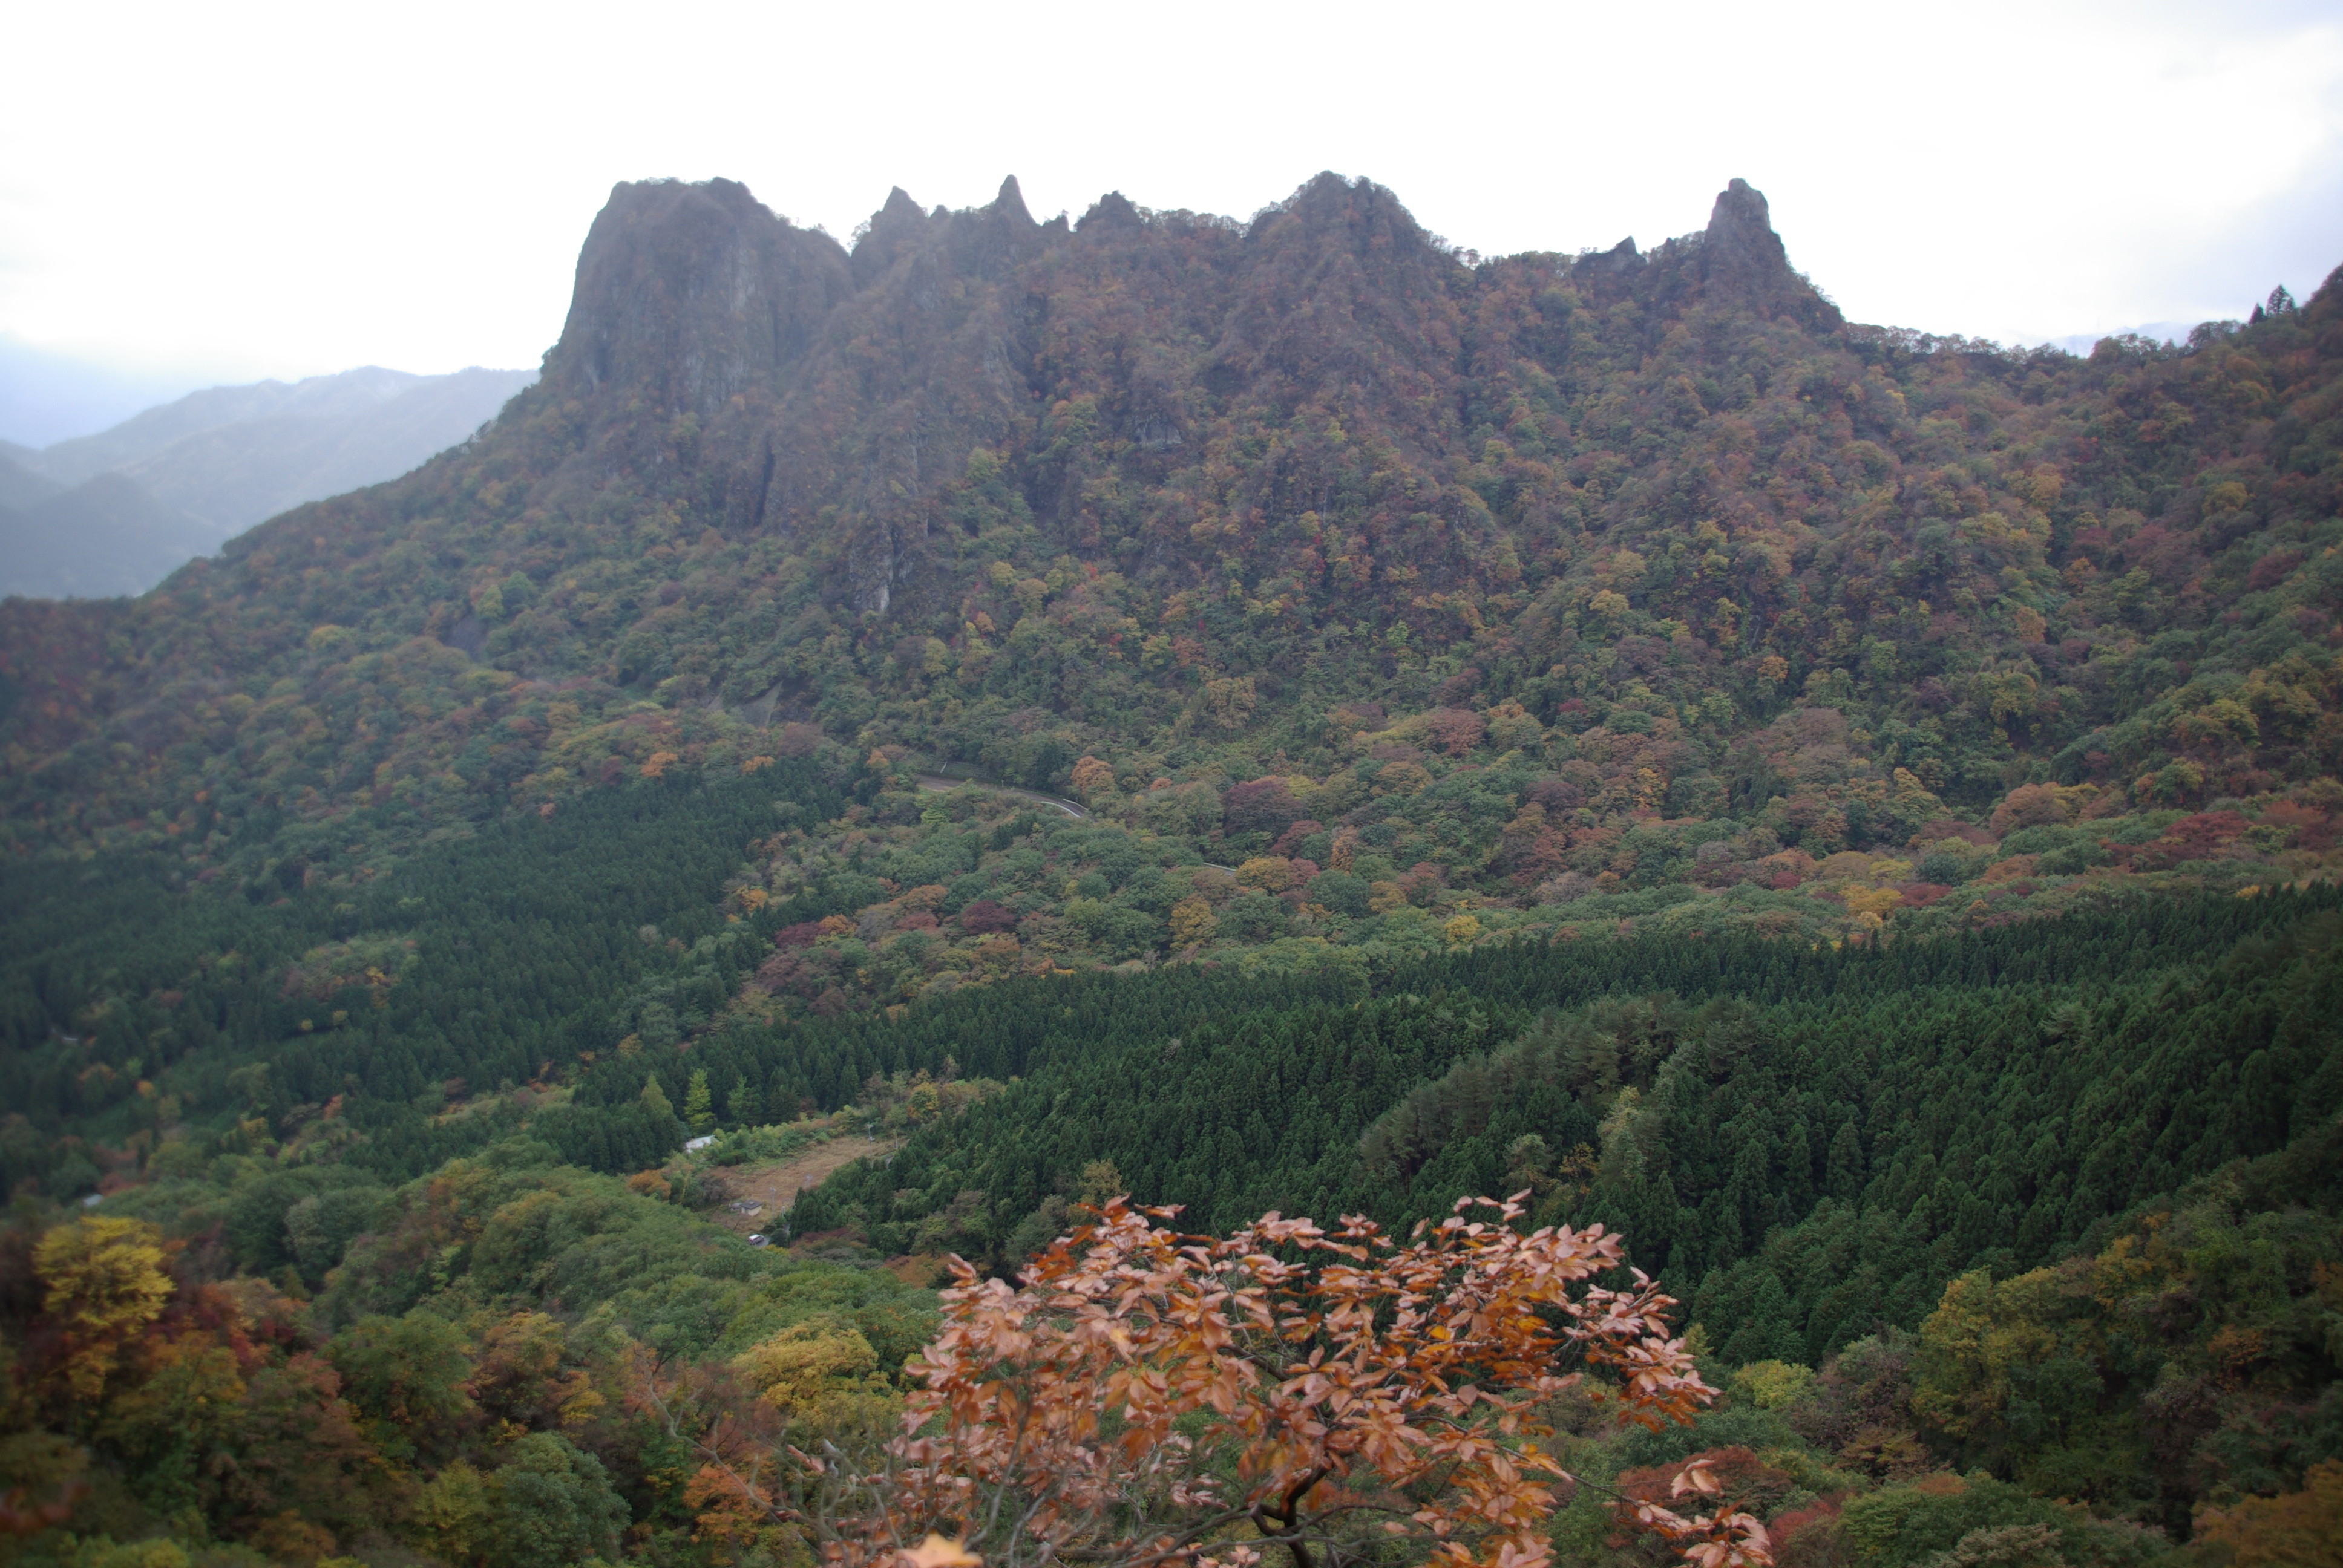 Mt. Myogi, Japan